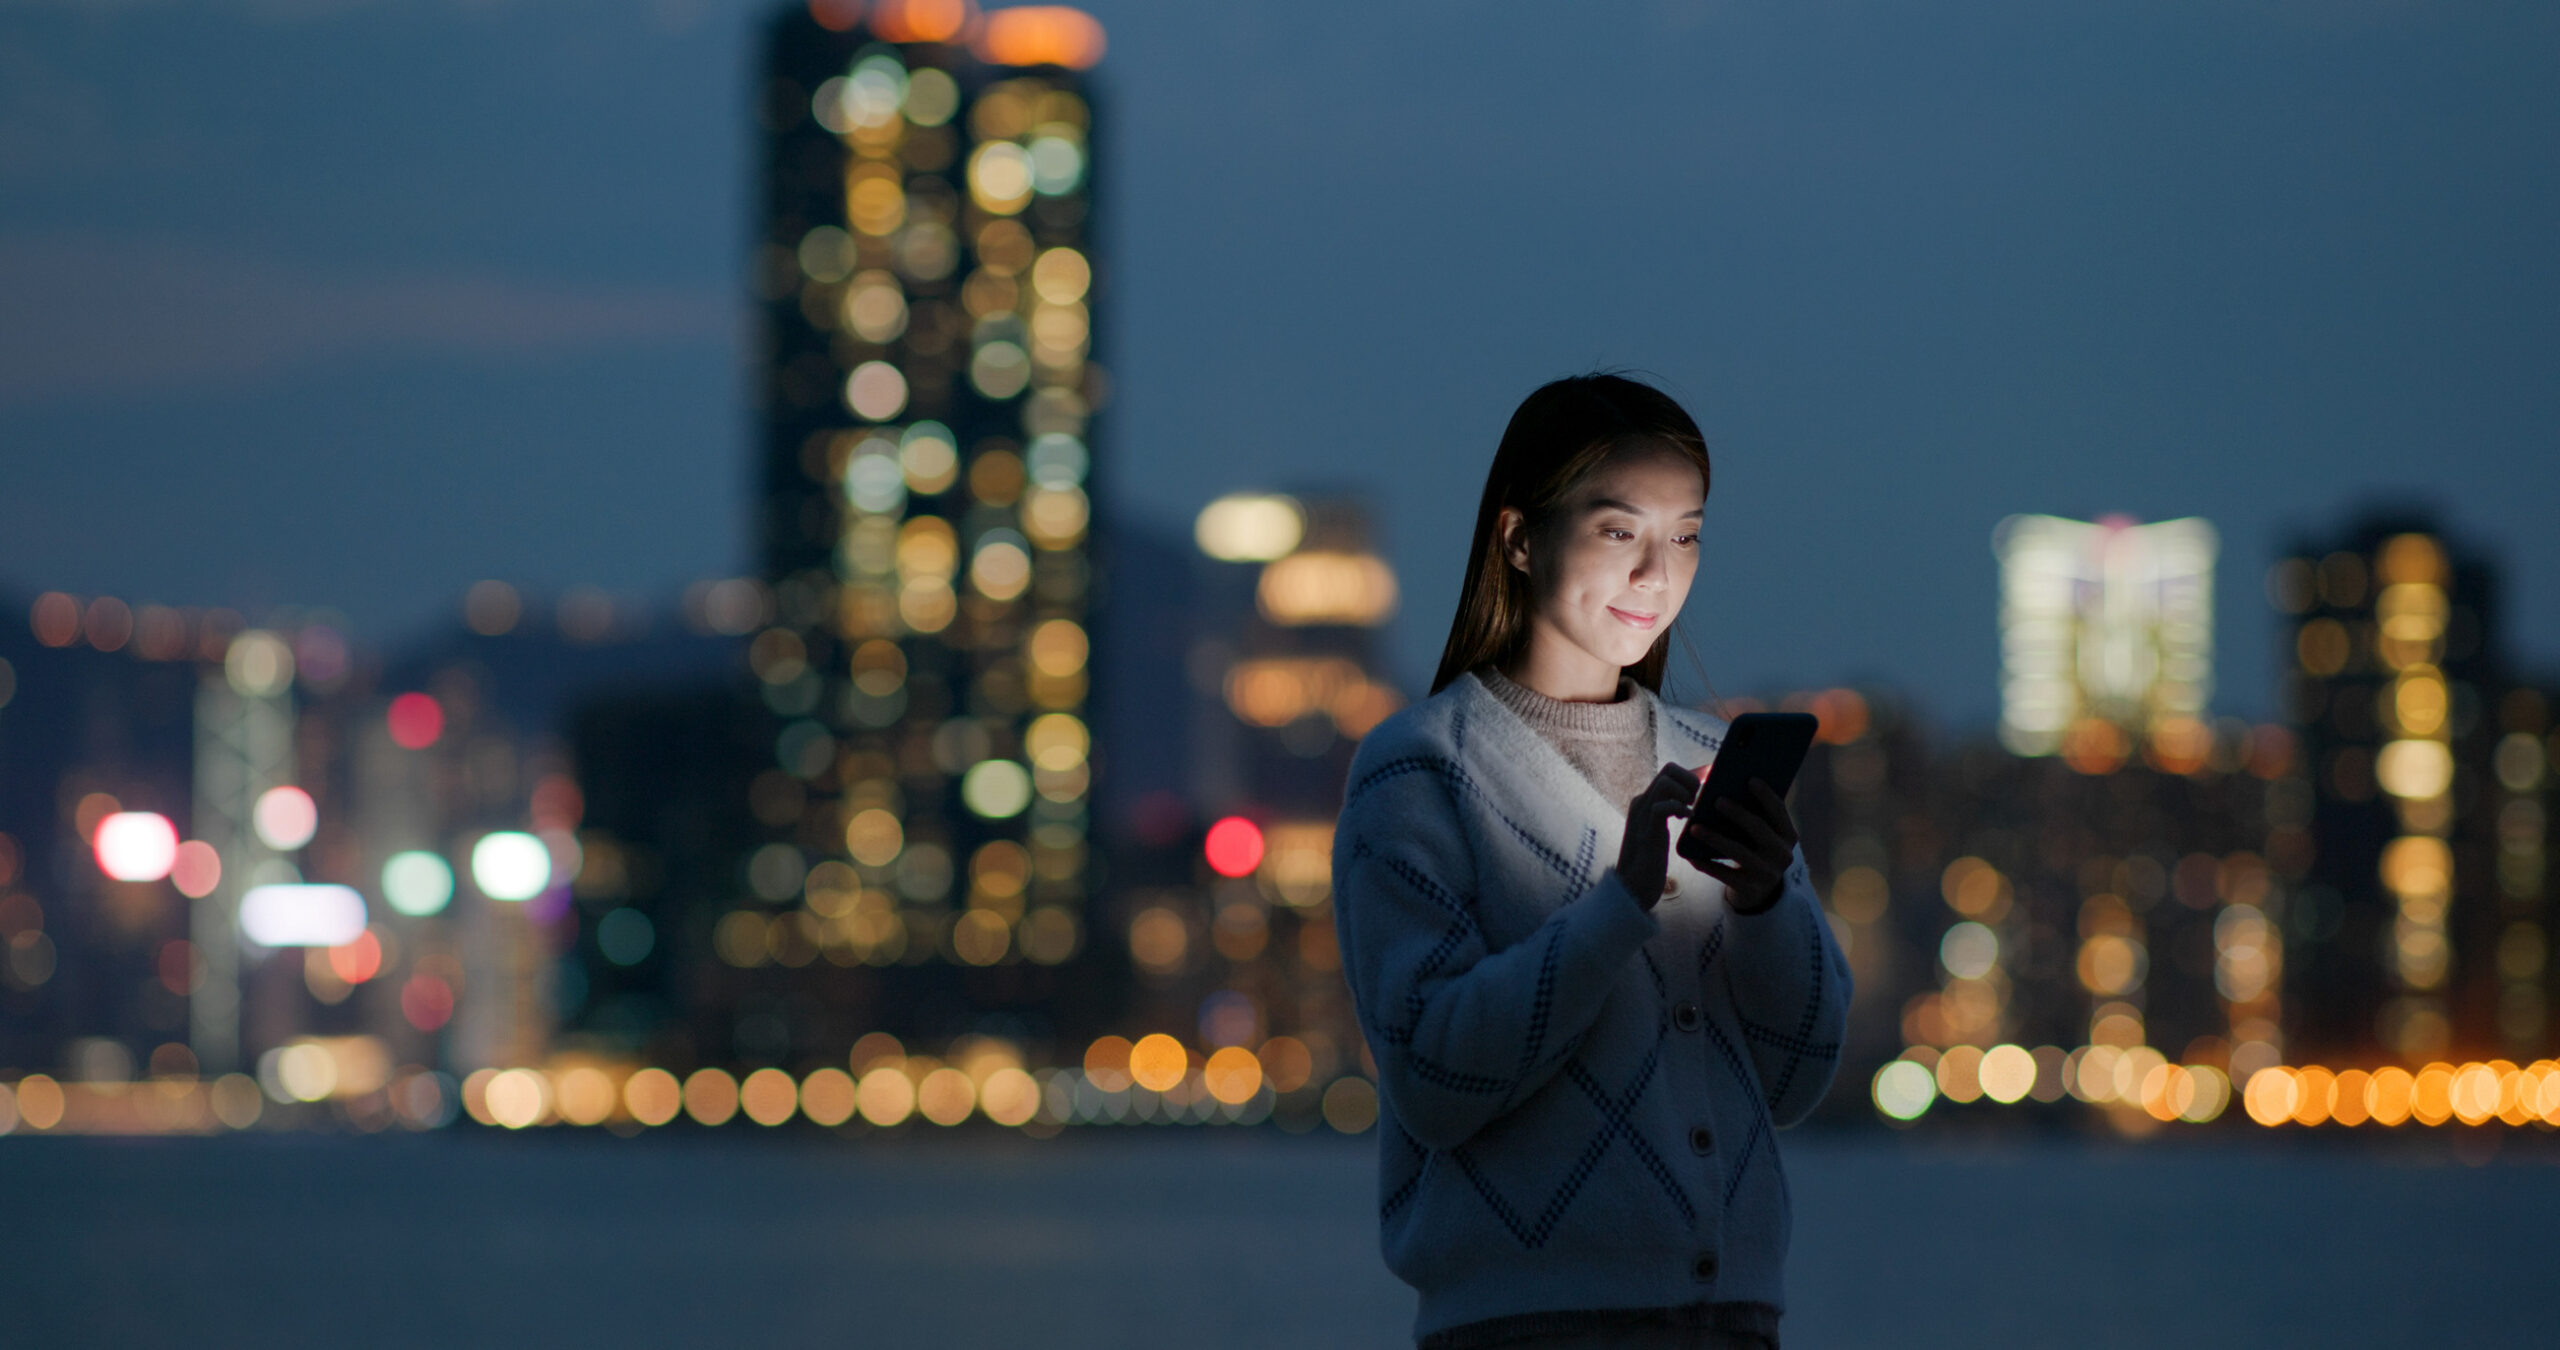 5G mění zažité způsoby práce na mobilu: lidé více hrají onliny hry a appky rozšířené reality